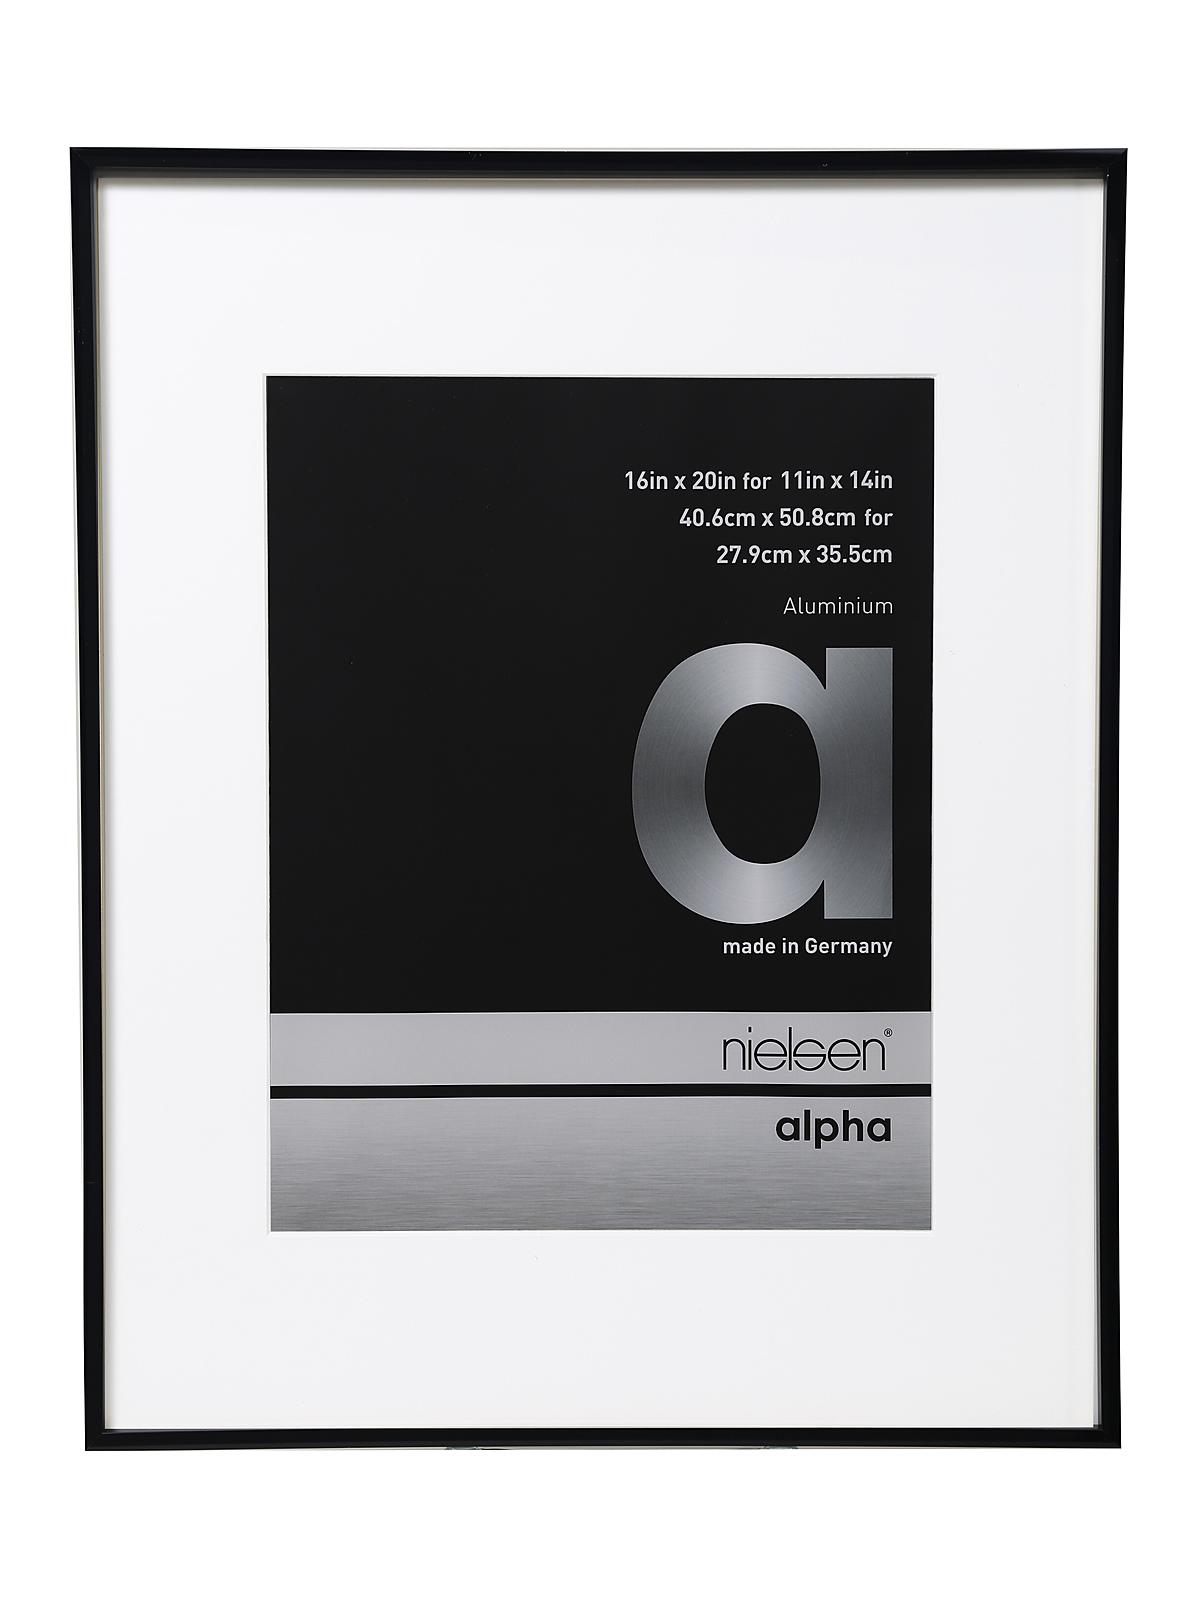 Alpha Aluminum Frames 16 In. X 20 In. Shiny Black 11 In. X 14 In. Opening